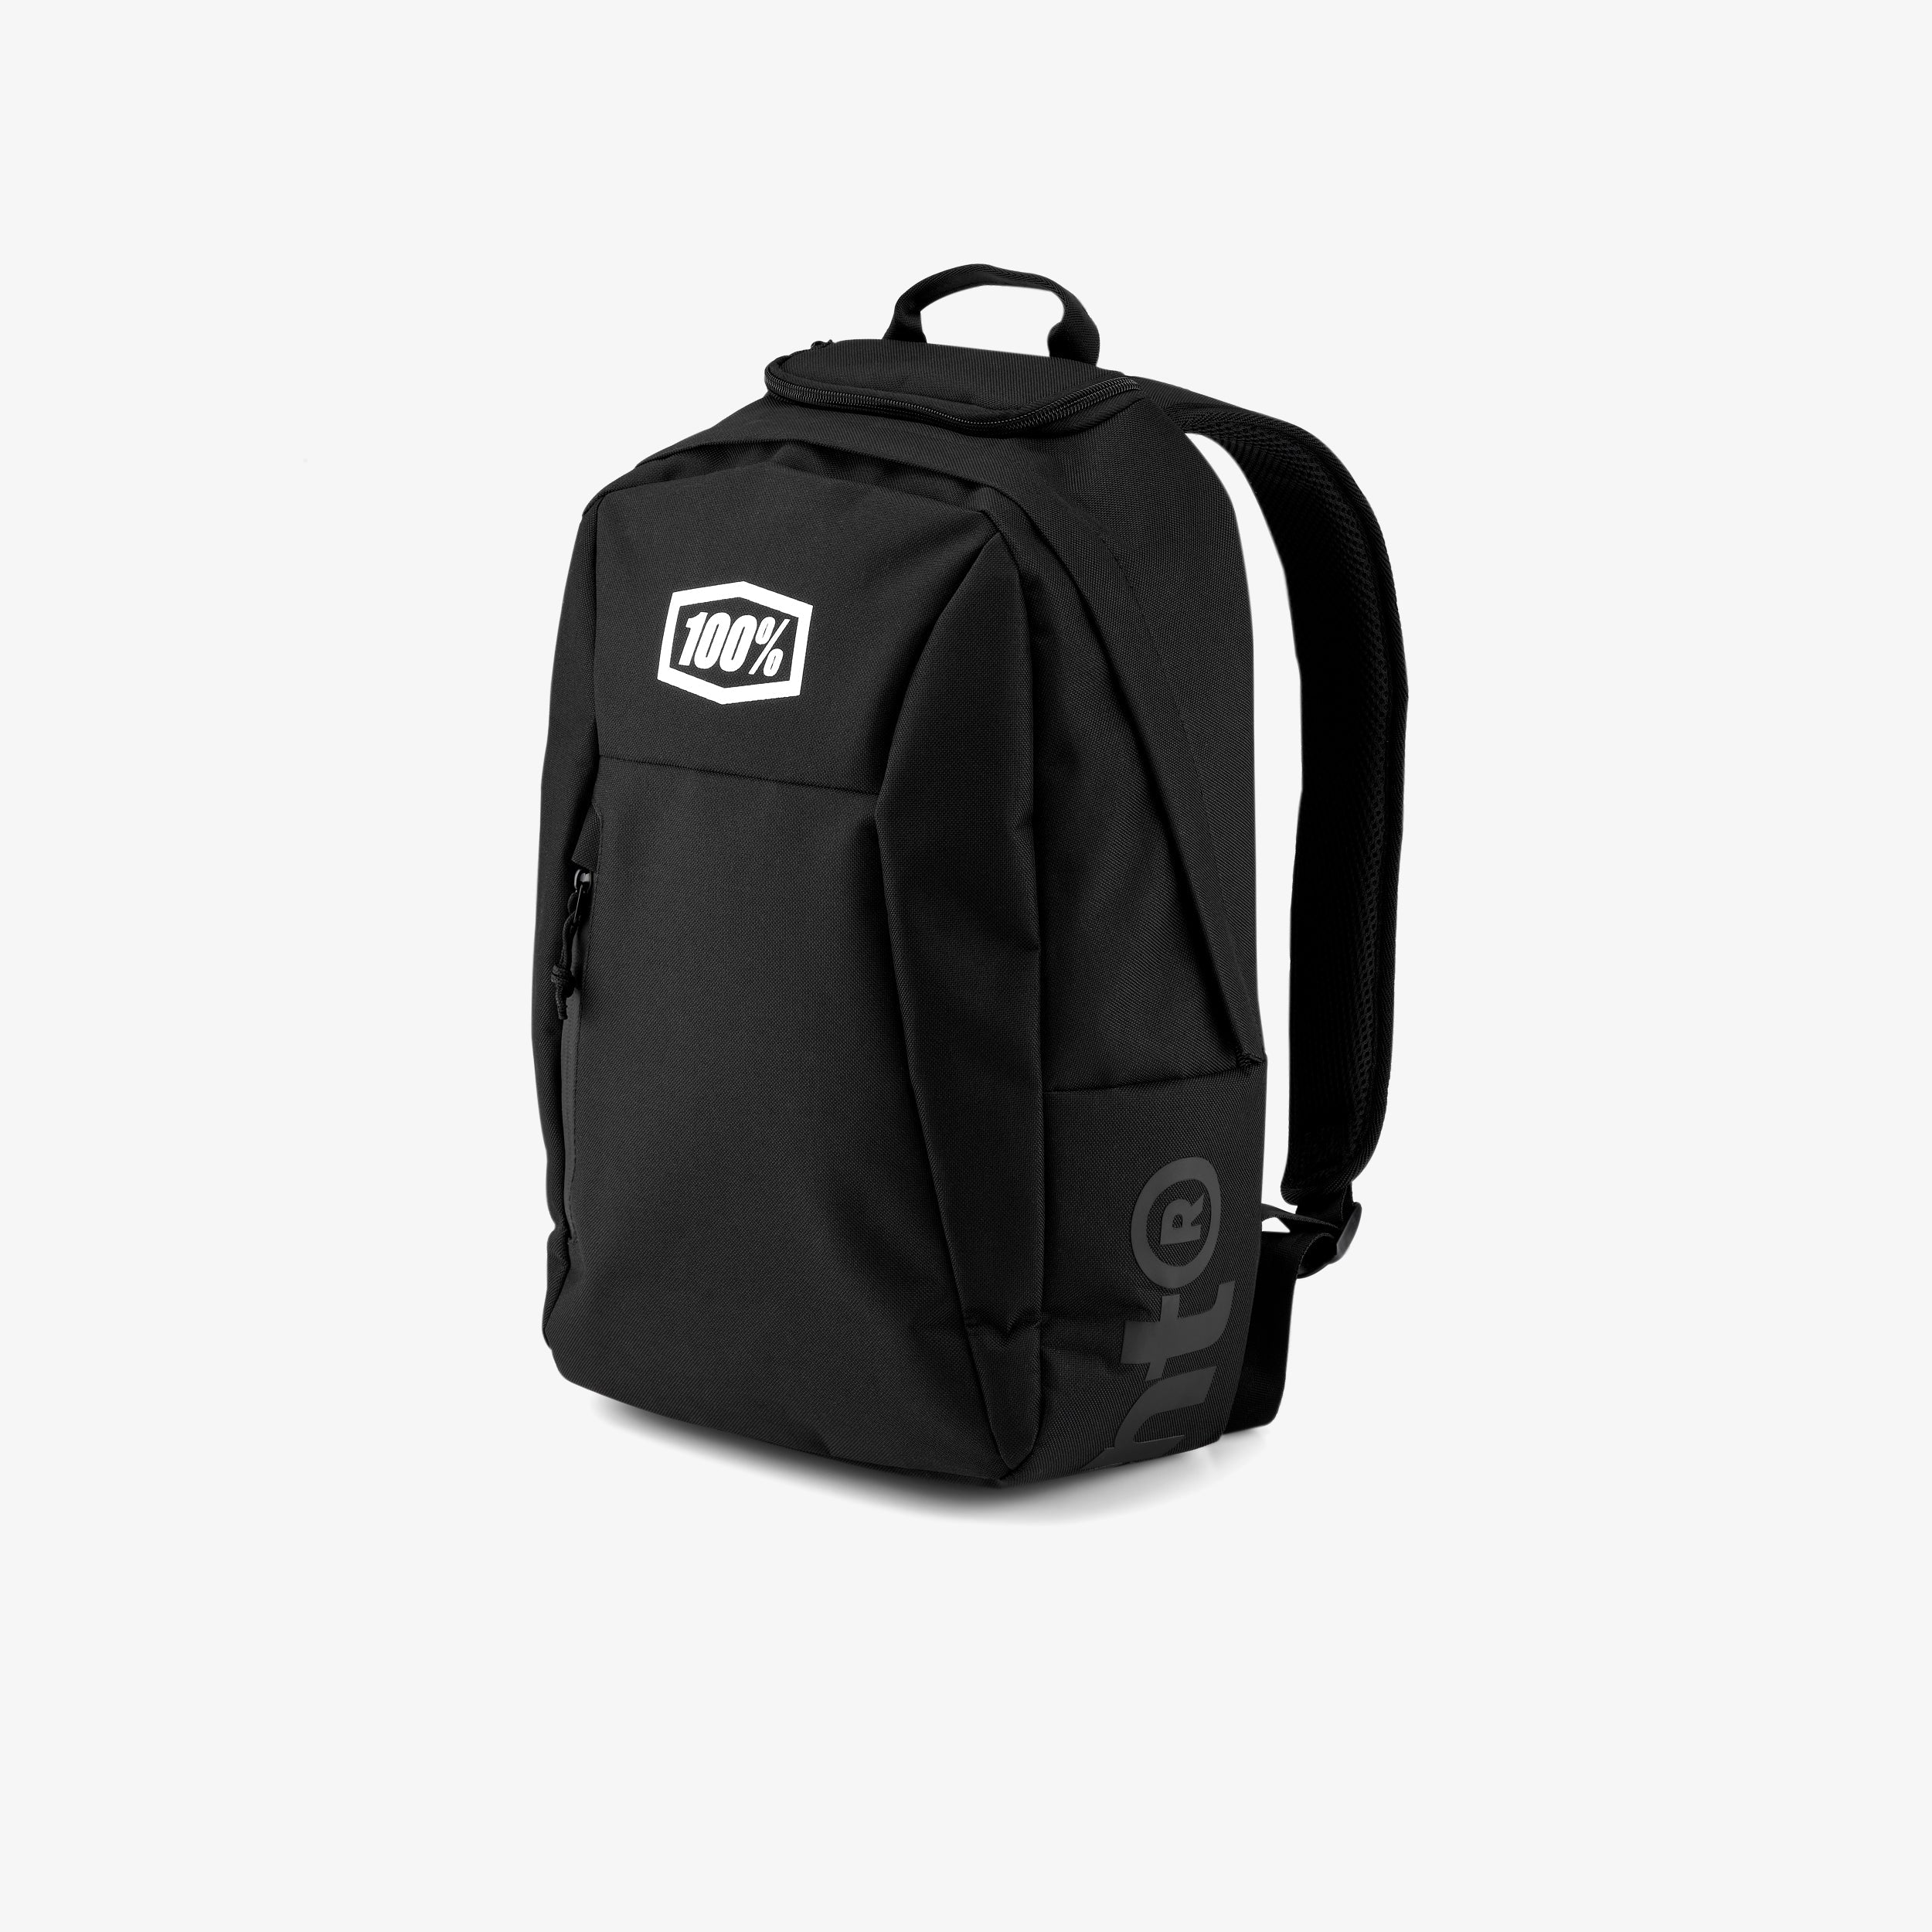 SKYCAP Black Backpack